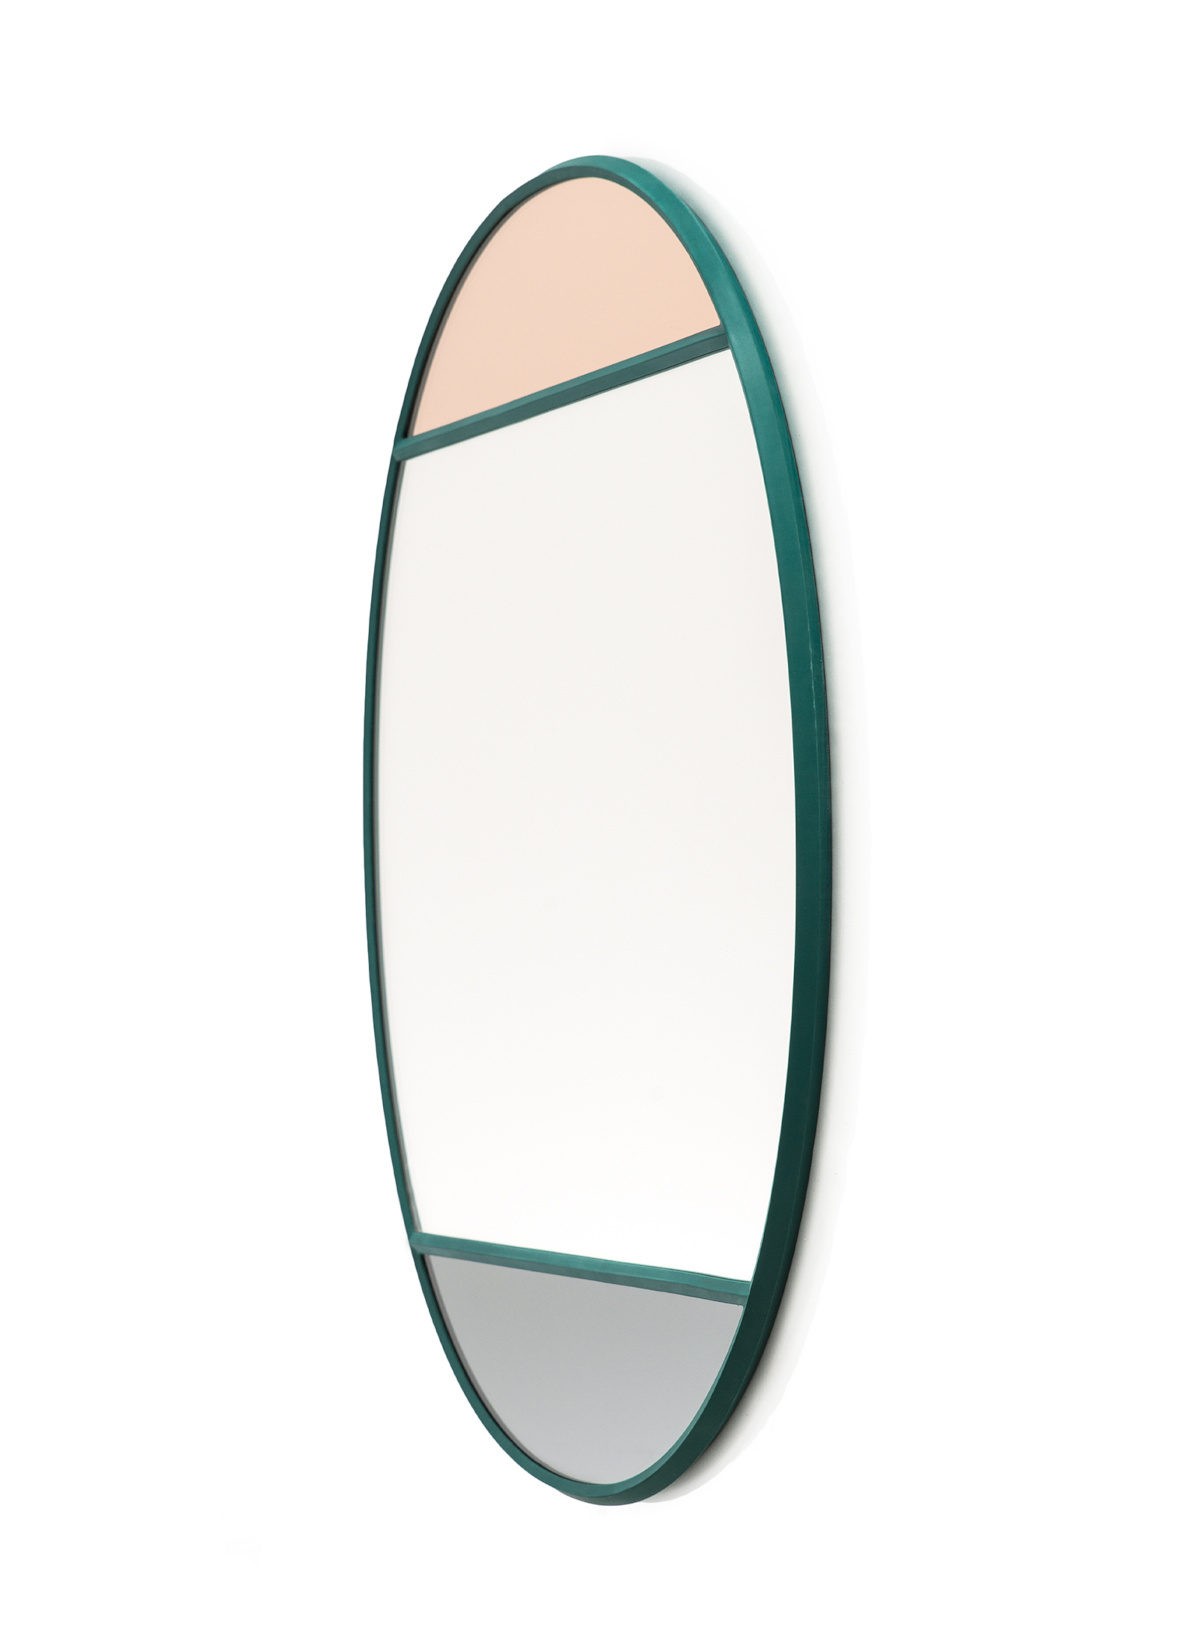 Vitrail Wandspiegel, oval, 50 x 60 cm, hellgrau / mehrfarbig